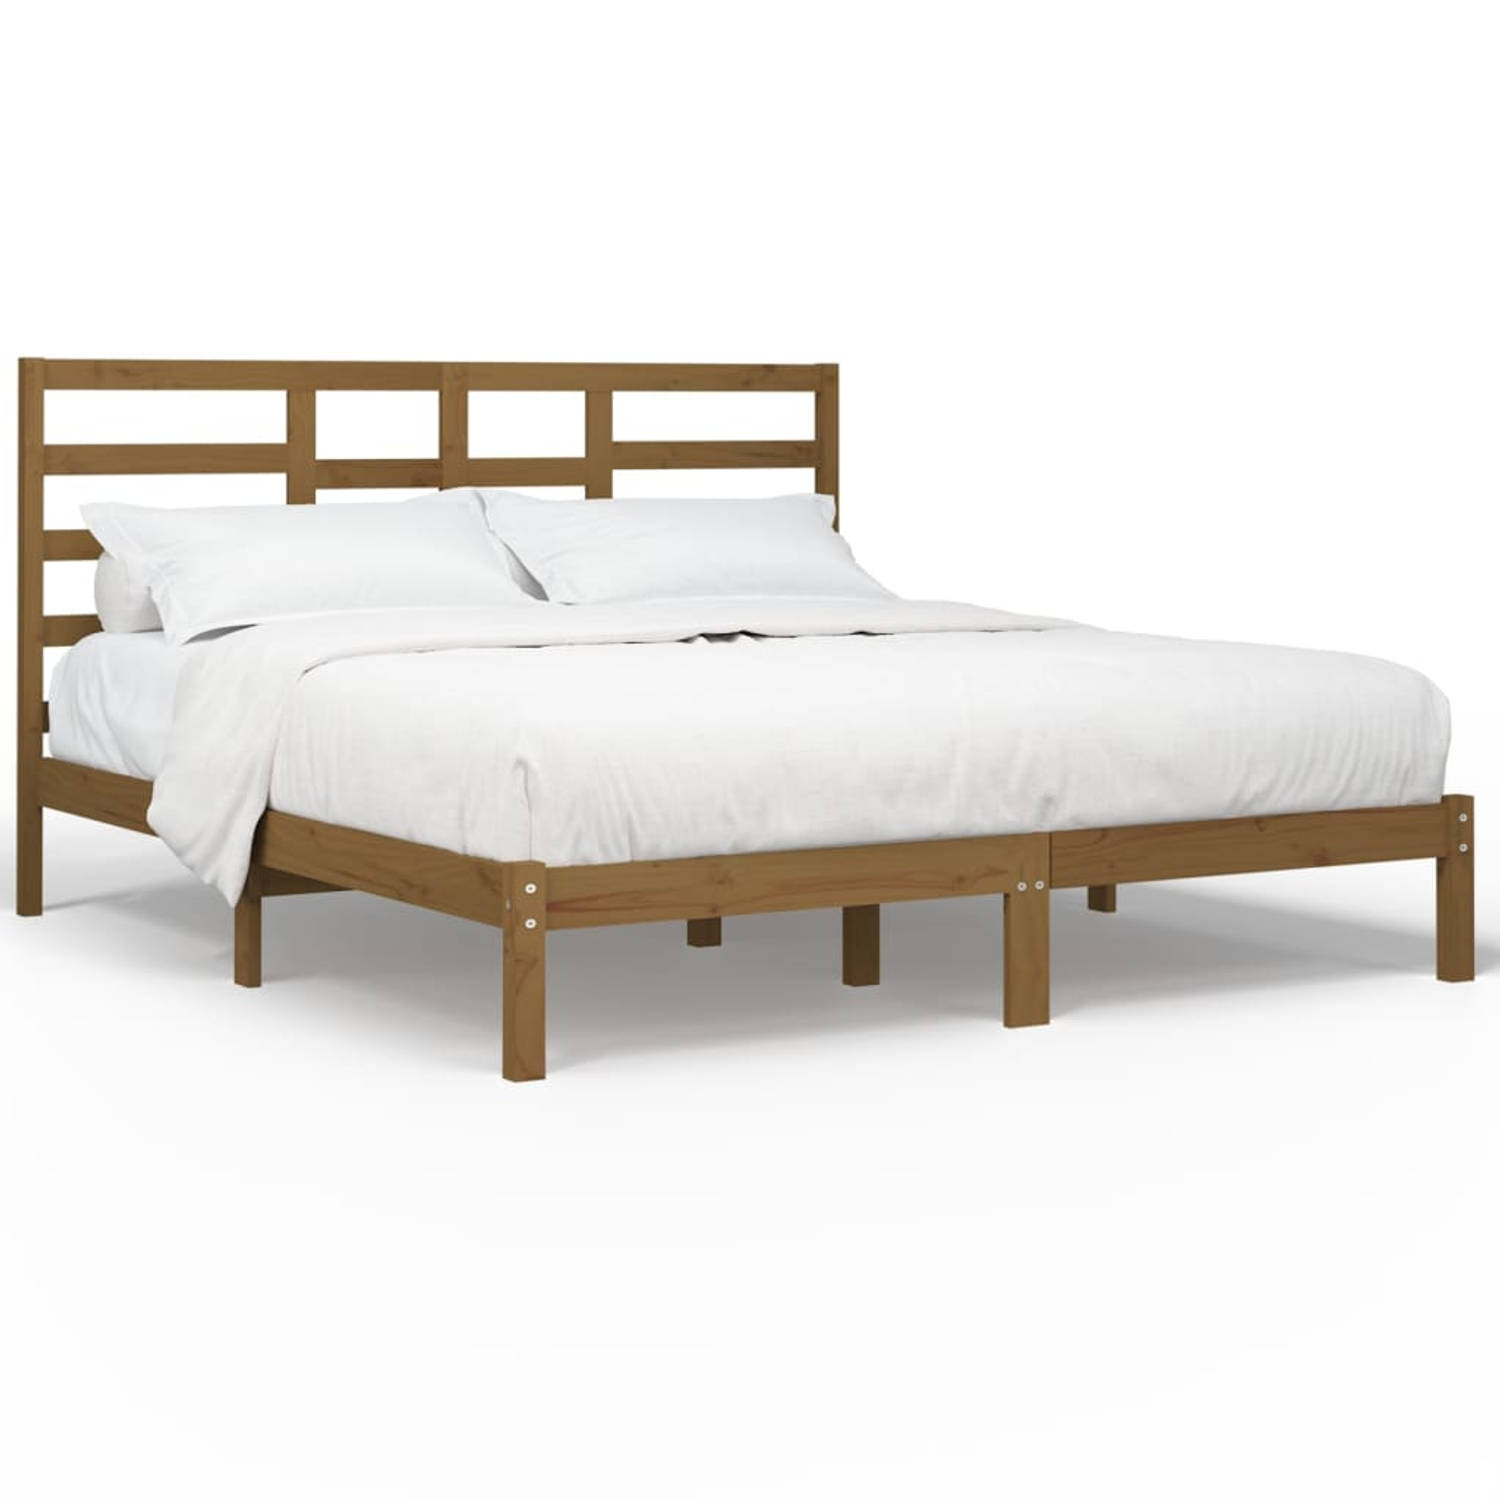 The Living Store Bedframe massief hout honingbruin 200x200 cm - Bedframe - Bedframes - Bed - Bedbodem - Ledikant - Bed Frame - Massief Houten Bedframe - Slaapmeubel - Tweepersoonsb